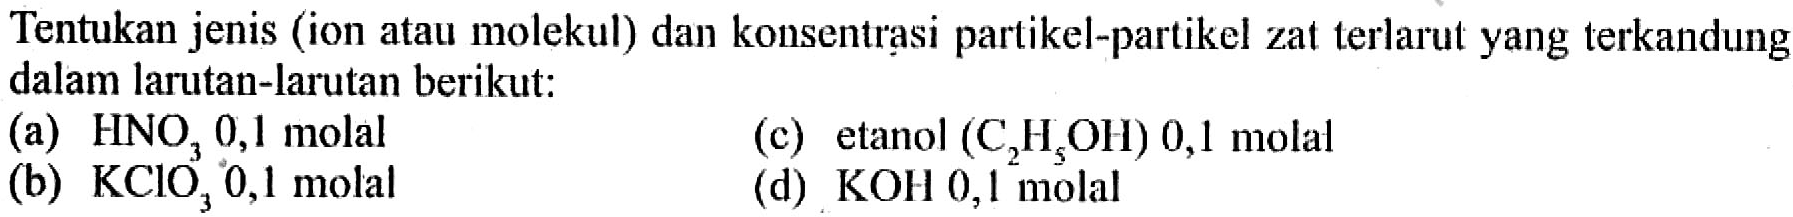 Tentukan jenis (ion atau molekul) dan konsentrasi partikel-partikel zat terlarut yang terkandung dalam larutan-larutan berikut: 
(a) HNO3 0,1 molal 
(c) etanol (C2H5OH) 0,1 molal 
(b) KClO3 0,1 molal 
(d) KOH 0,1 molal